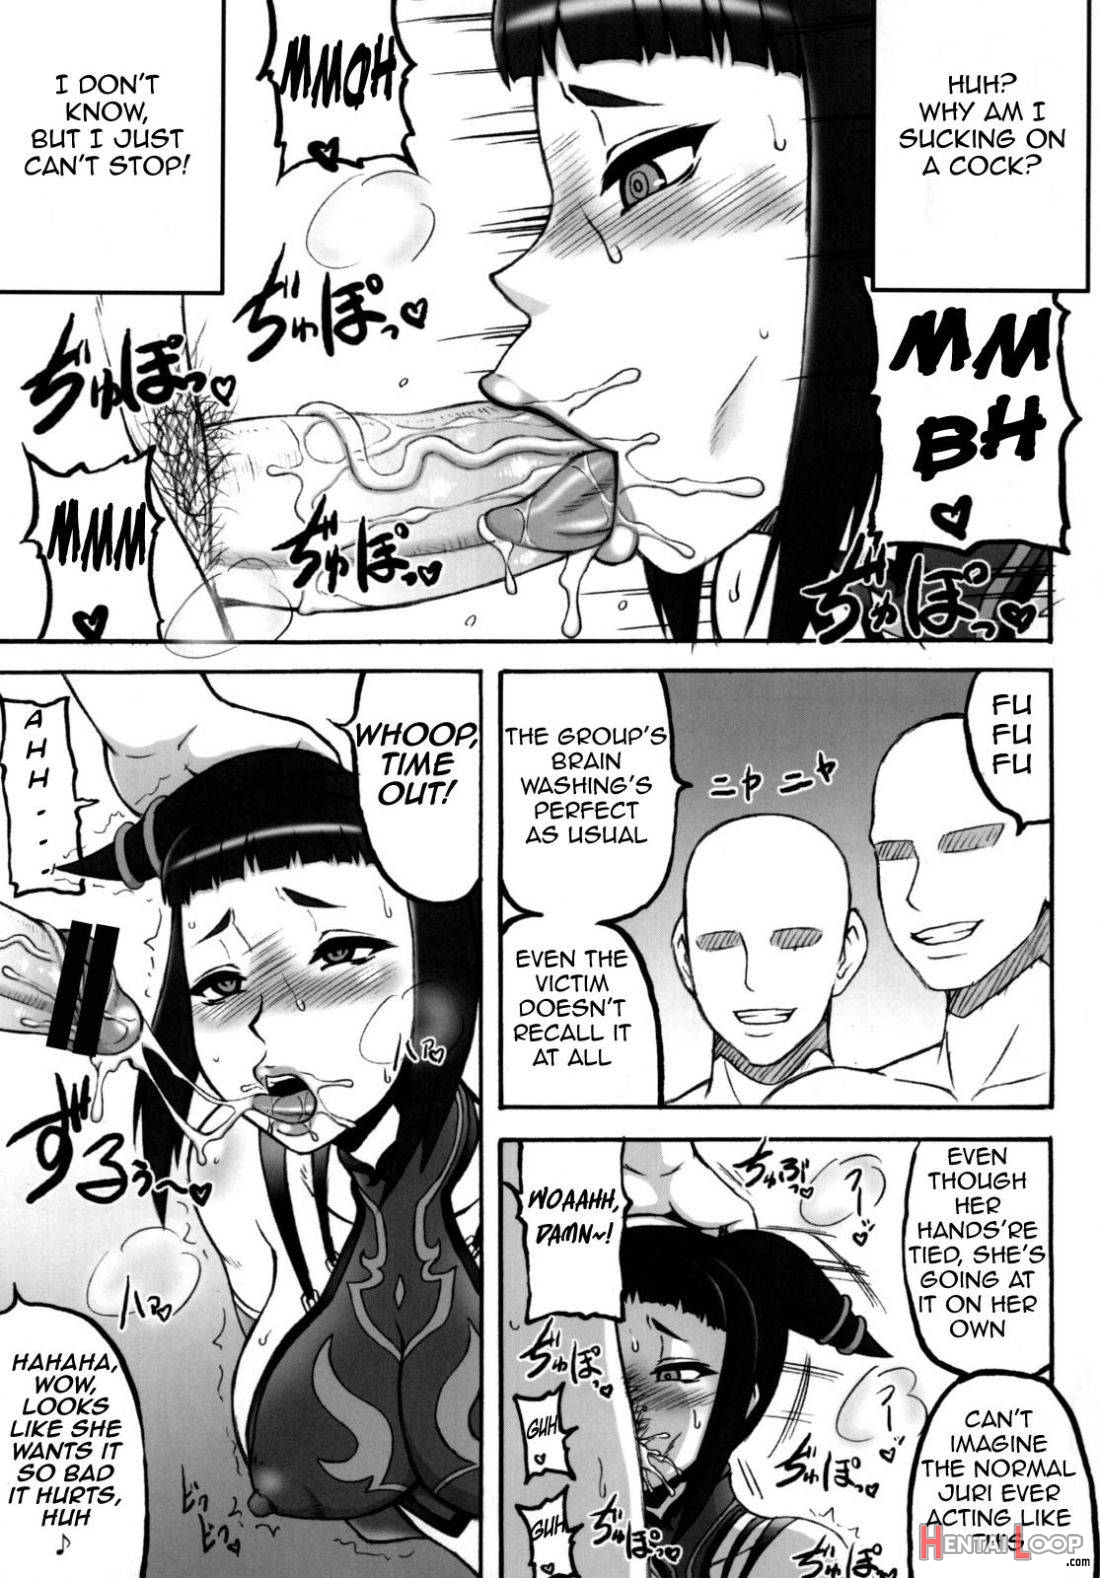 Kaku Musume vol. 12 page 6